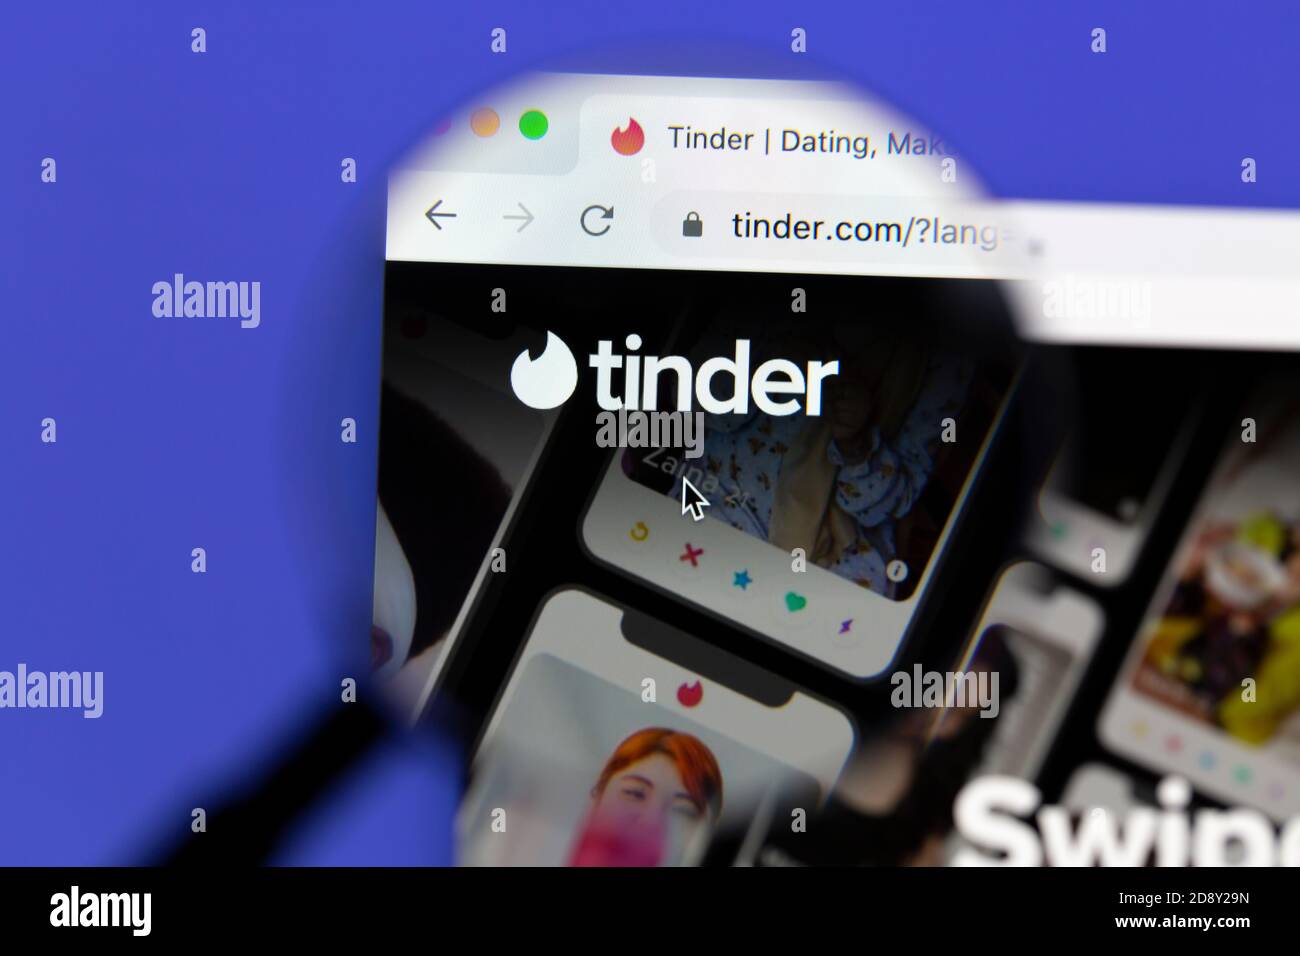 Ostersund, Schweden - 31. Oktober 2020 Tinder Homepage. Tinder ist eine amerikanische geosoziale Netzwerk- und Online-Dating-Anwendung. Stockfoto